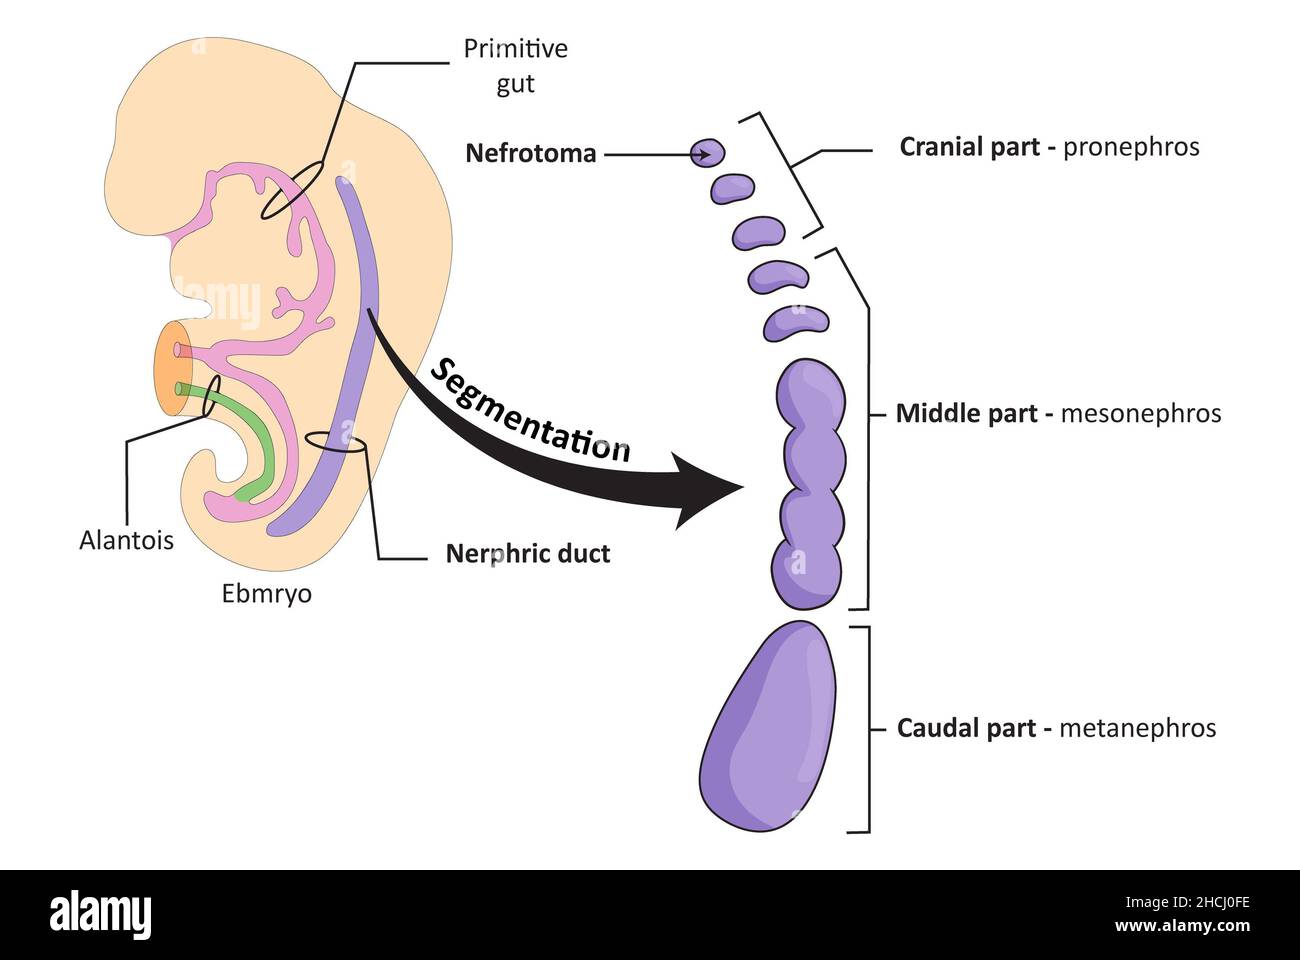 Embryologische Entwicklung des renalen (urinären) Systems, Segmentierung des Ductus nephricus Stockfoto